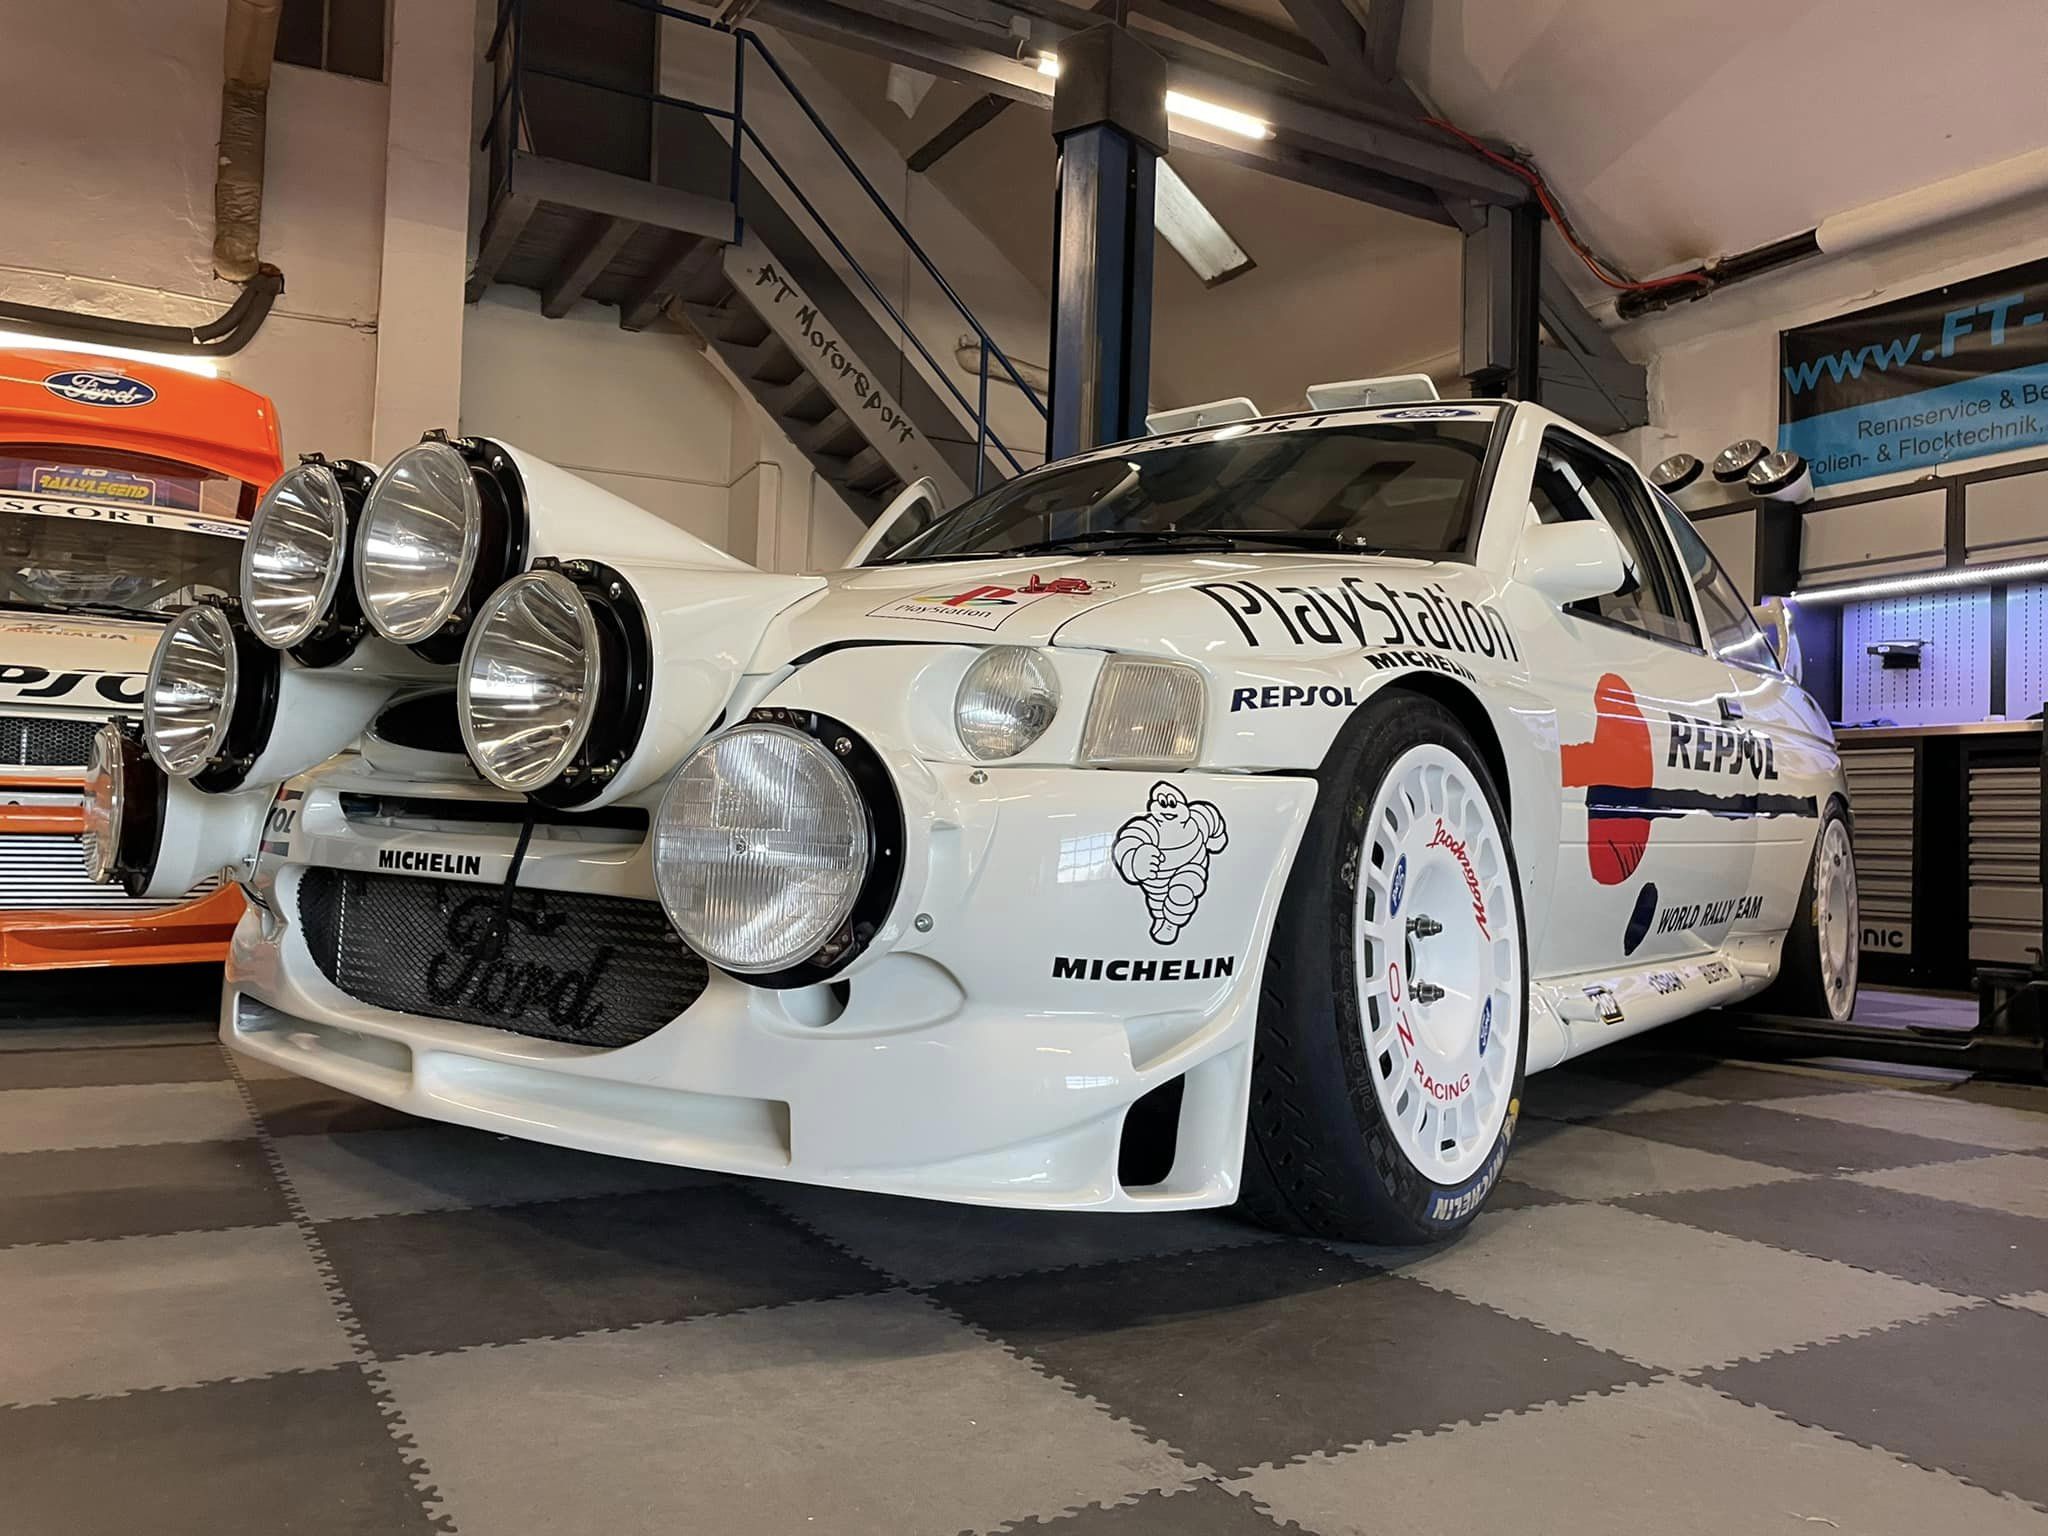 Ford Escort Cosworth WRC Repsol Test Car.